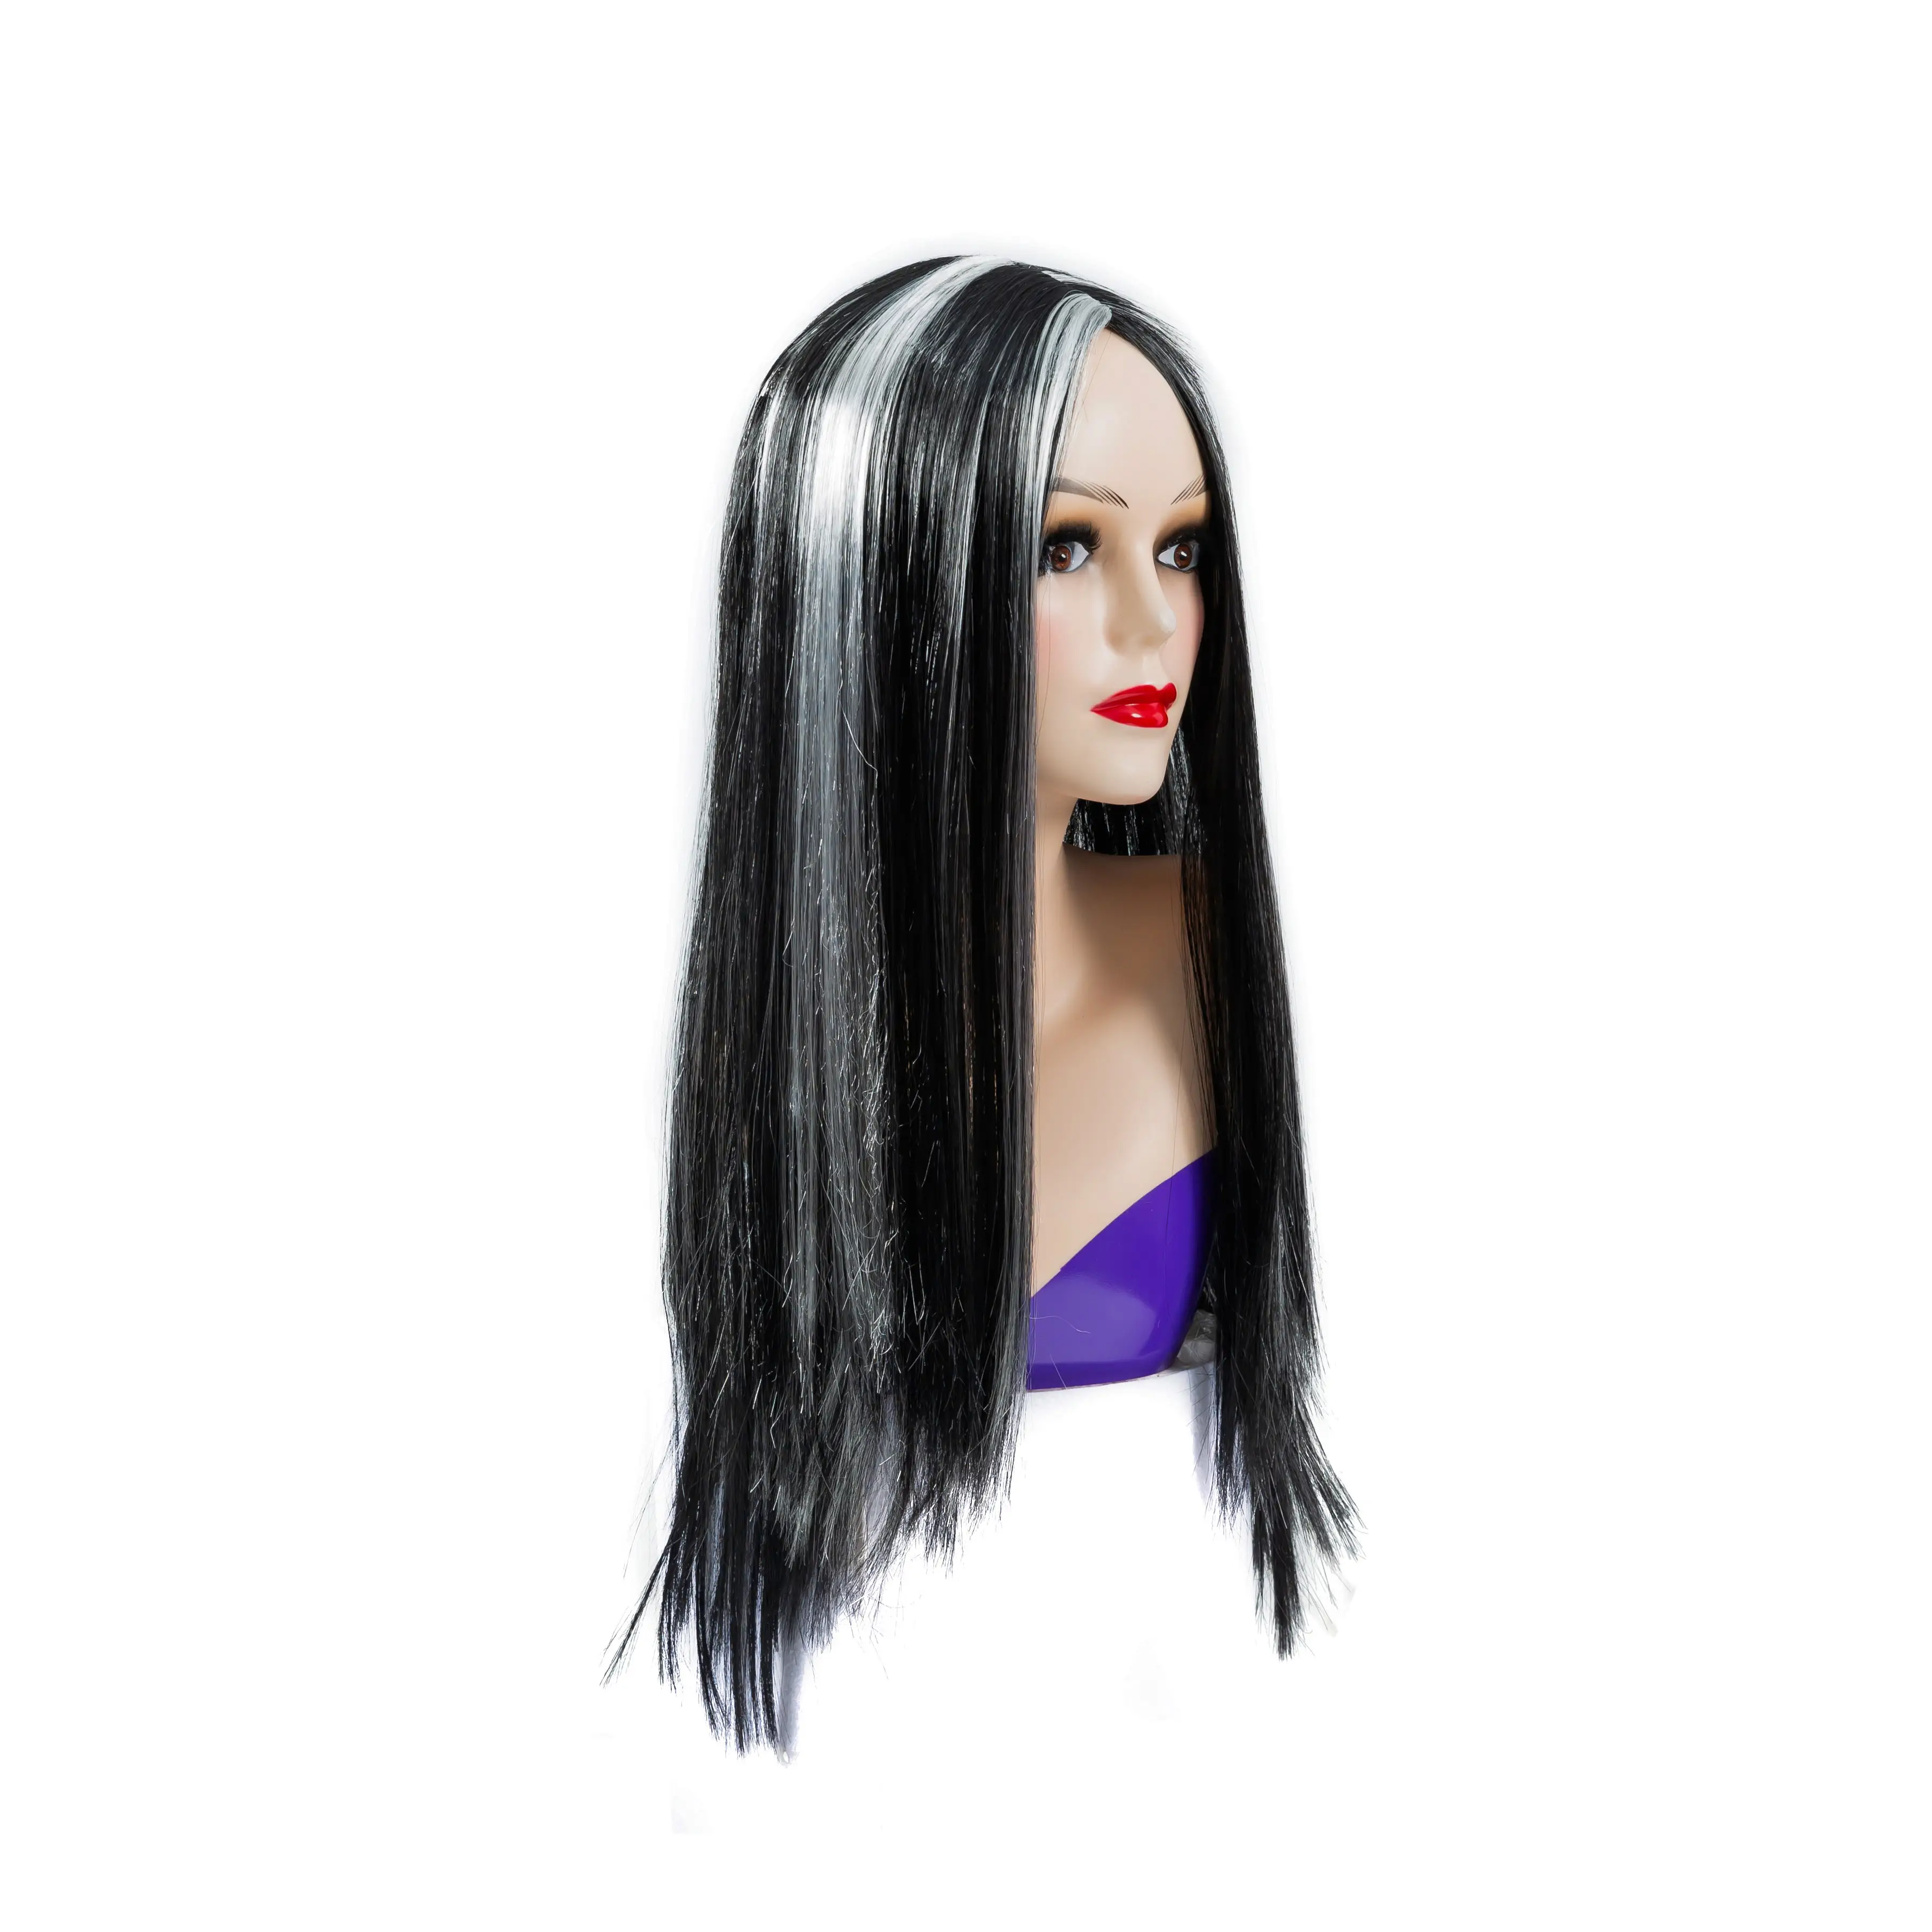 ANXIN हैलोवीन कॉसप्ले विग रंगीन सिंथेटिक सीधे बाल तकनीकी रूप से हाइलाइट किए गए फाइबर कॉस्पली उपयोग के साथ